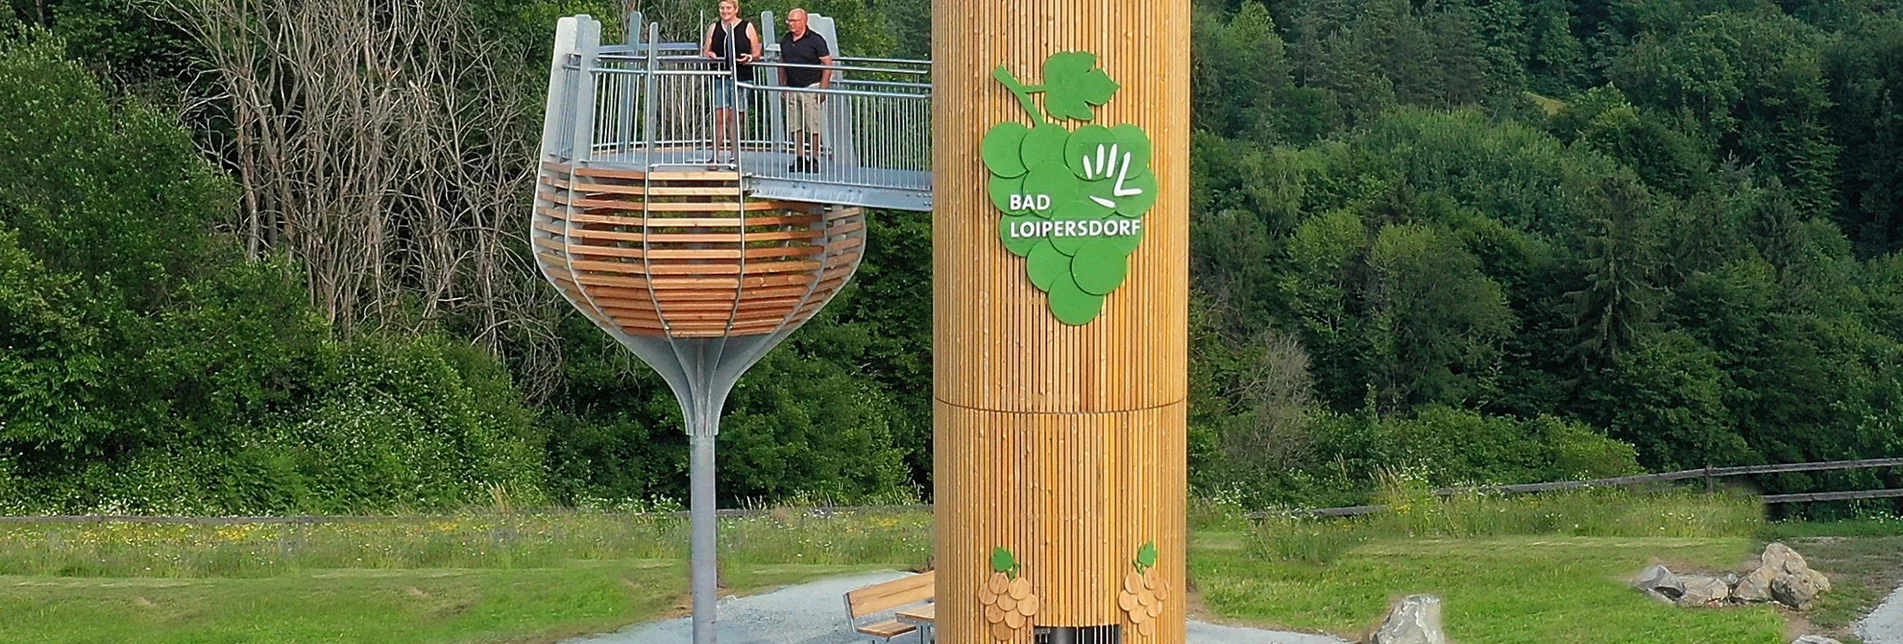 Themen- und Lehrpfad Wein-Erlebnis-Weg Bad Loipersdorf - Touren-Impression #1 | © Gemeinde Bad Loipersdorf